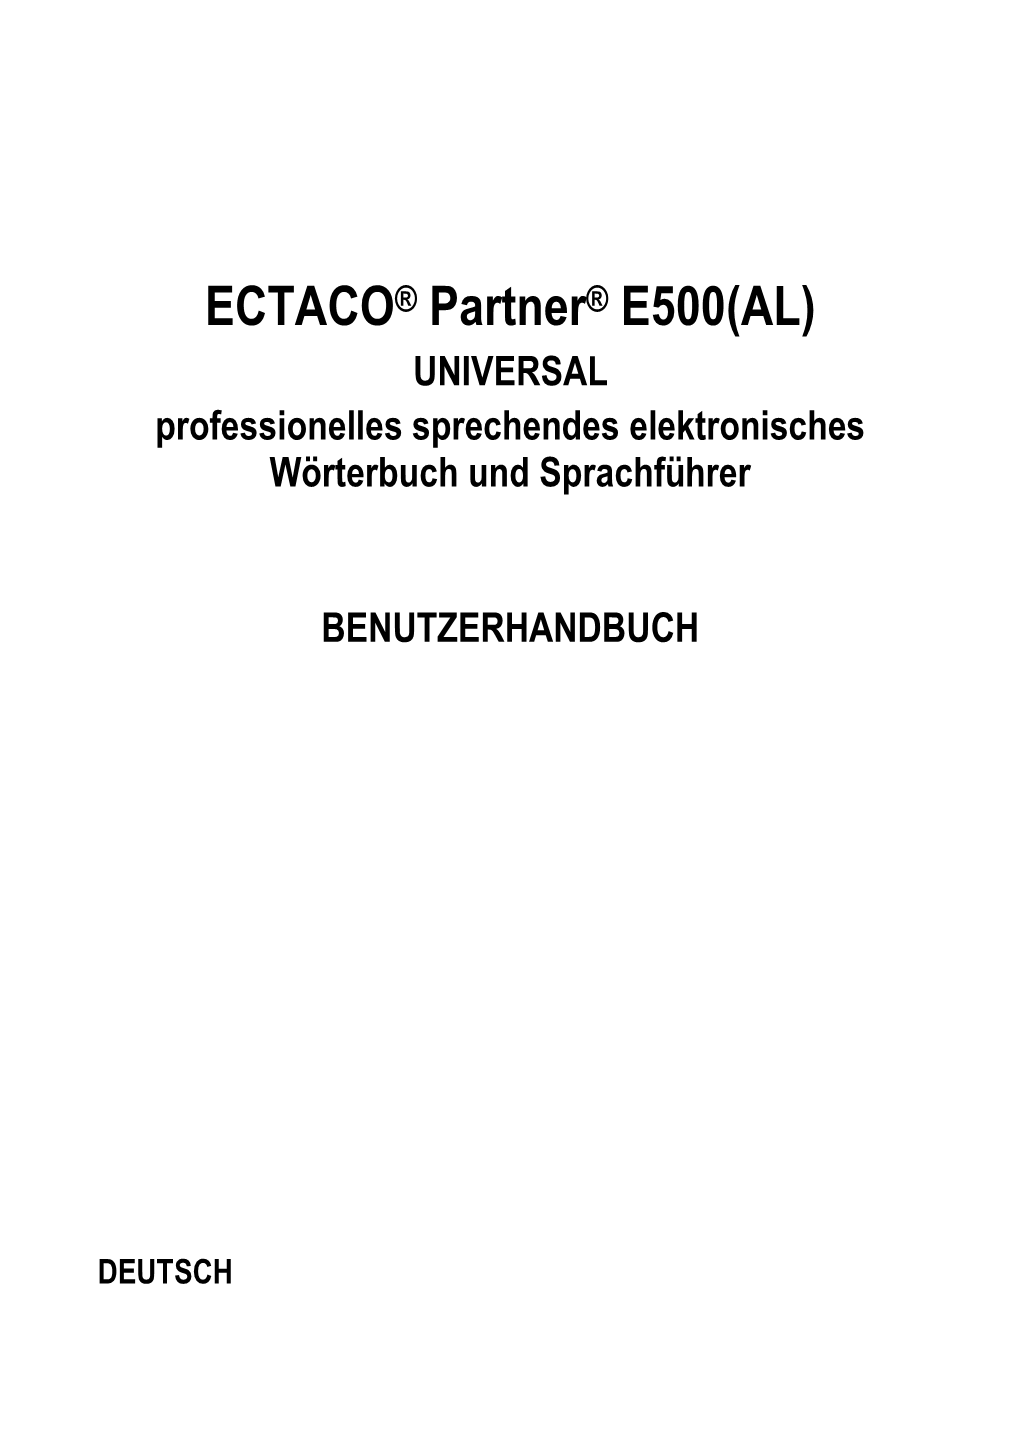 ECTACO® Partner® E500(AL) UNIVERSAL Professionelles Sprechendes Elektronisches Wörterbuch Und Sprachführer